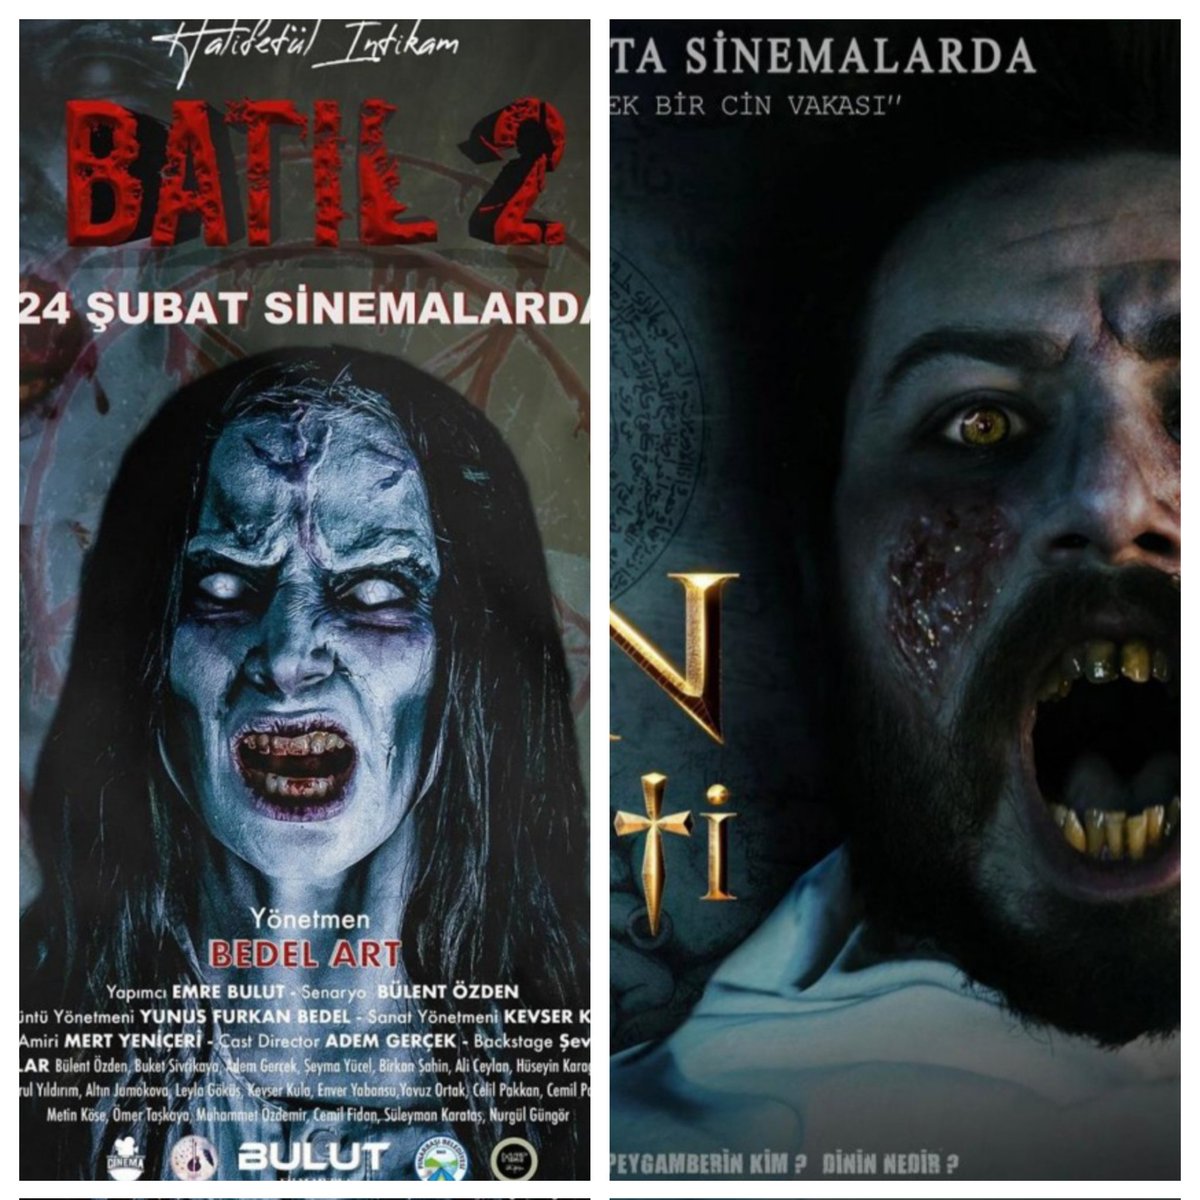 Bugün yine iki cinli filmimiz daha oldu: Batıl 2 ve Cin Sureti. Detaylar instagram sayfamda. #sinema #korkufilmi